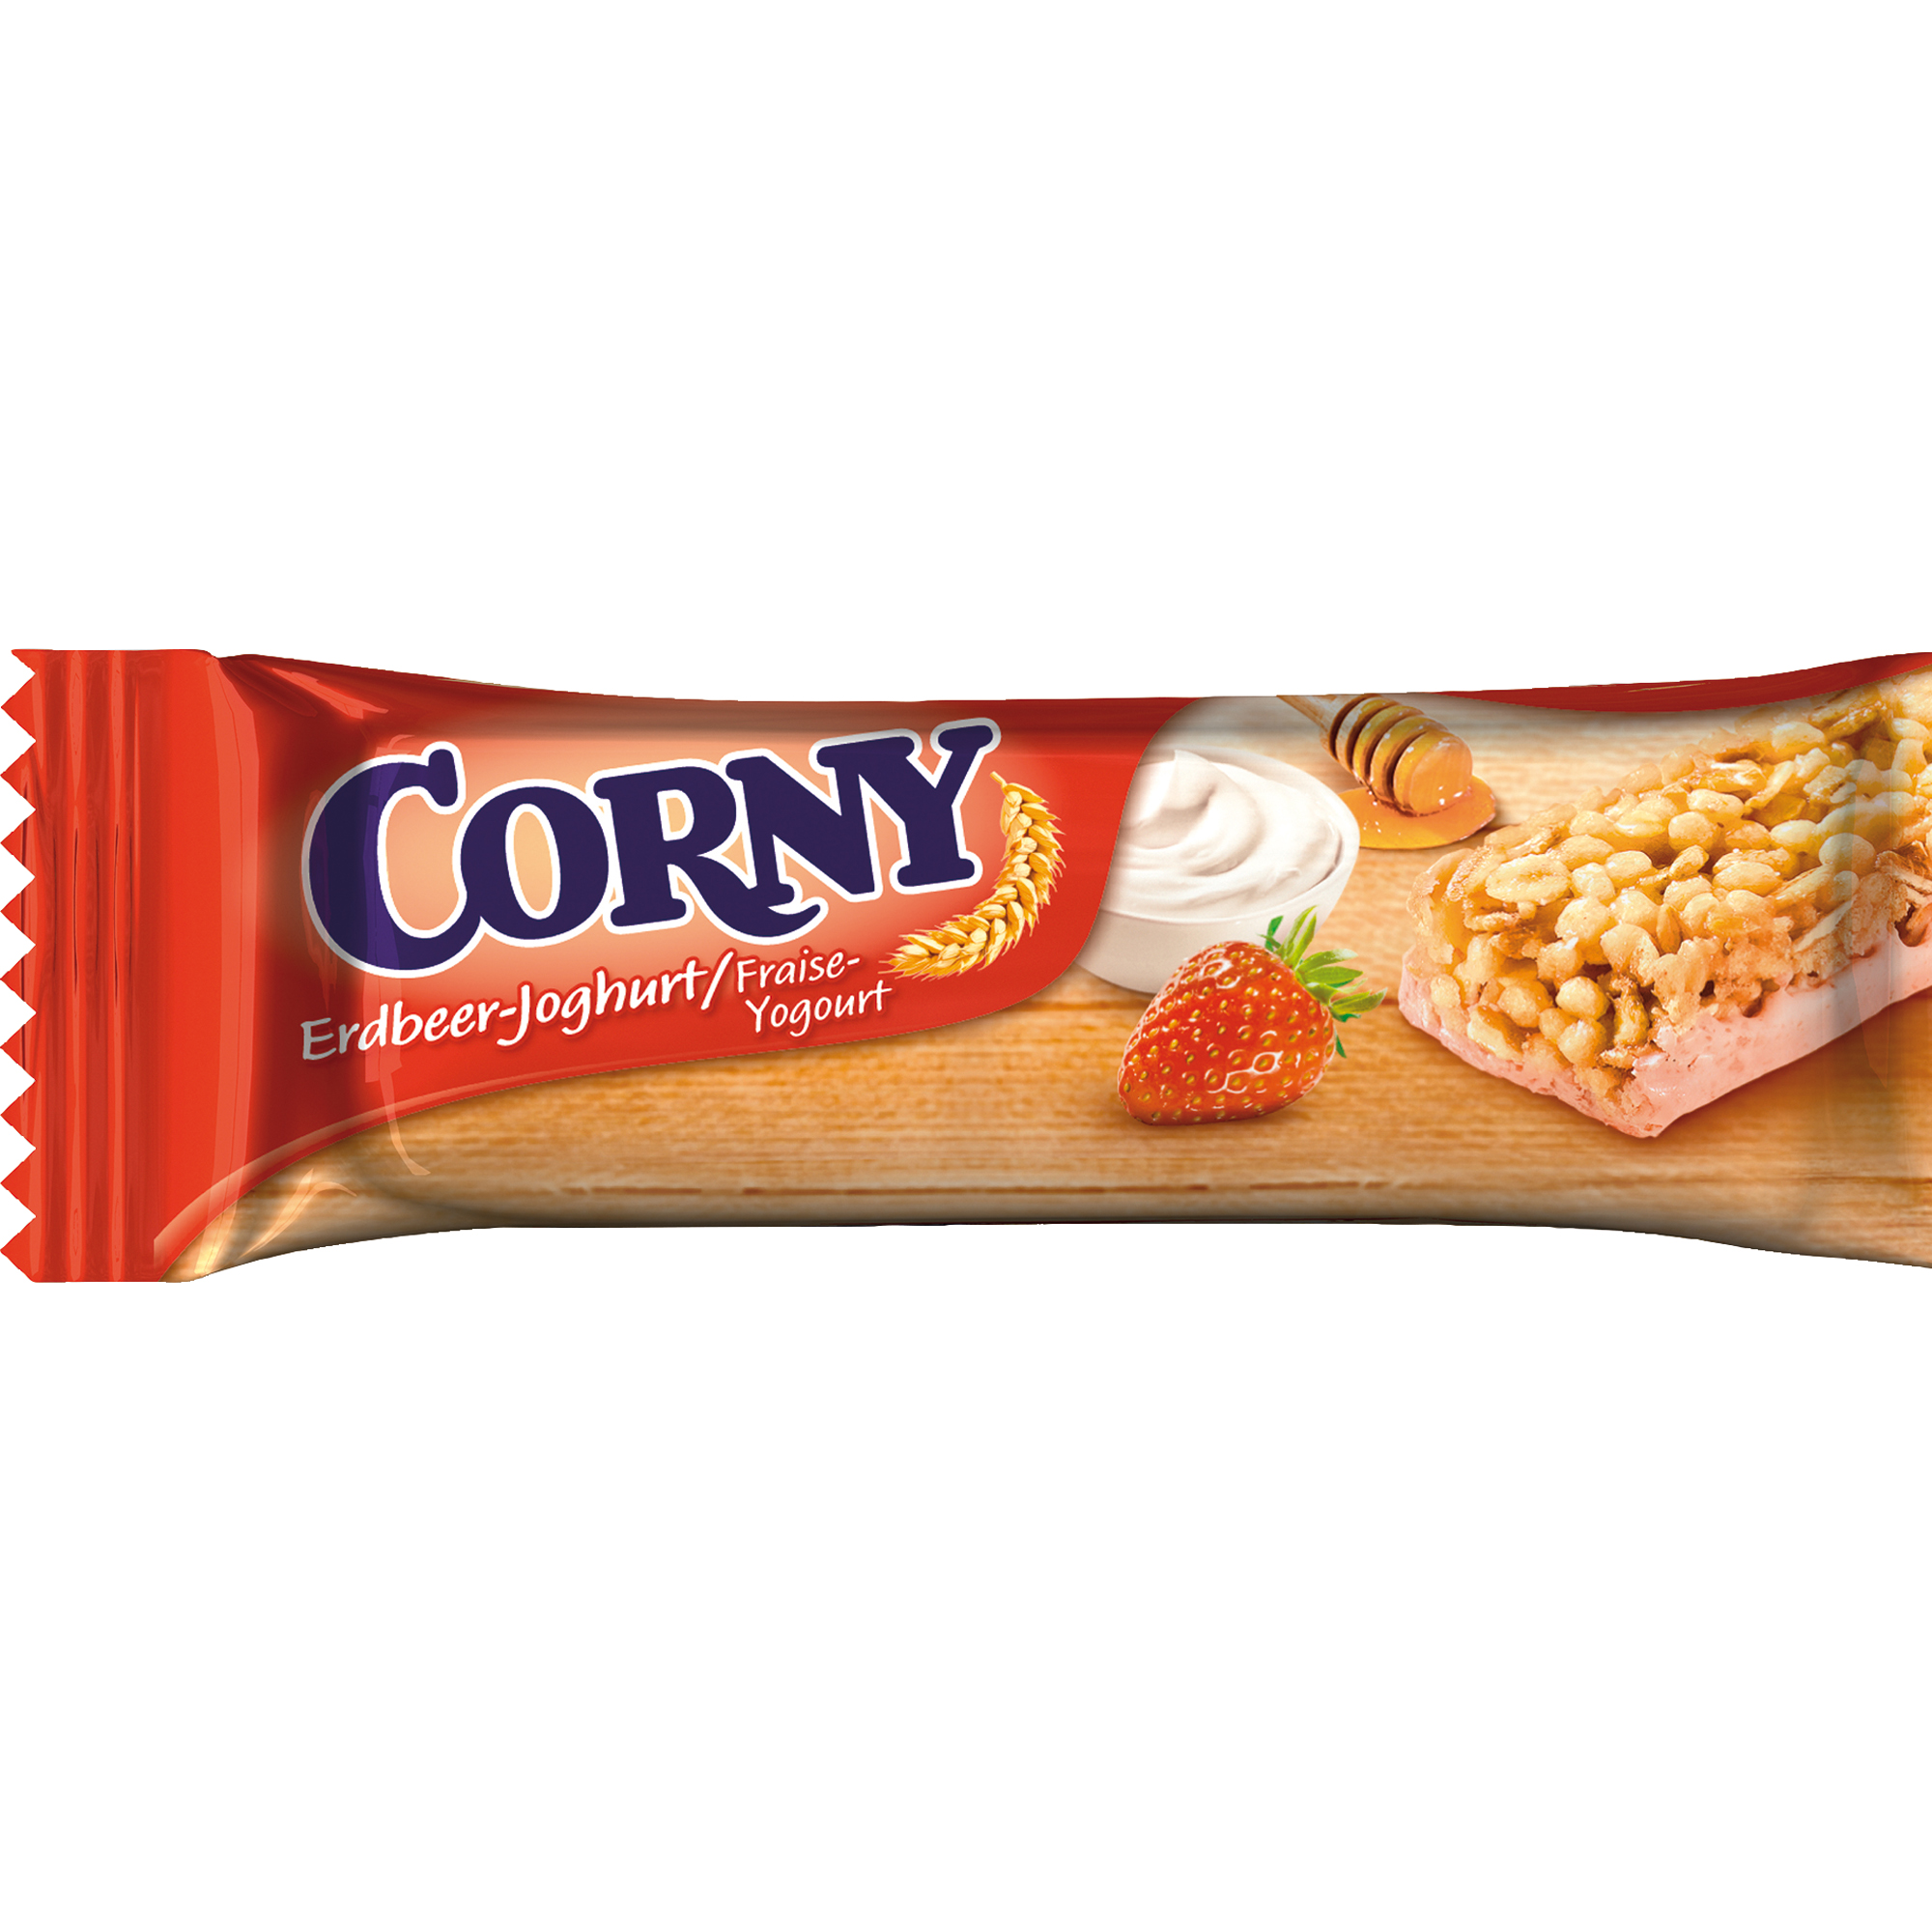 Corny Müsliriegel Erdbeer-Joghurt